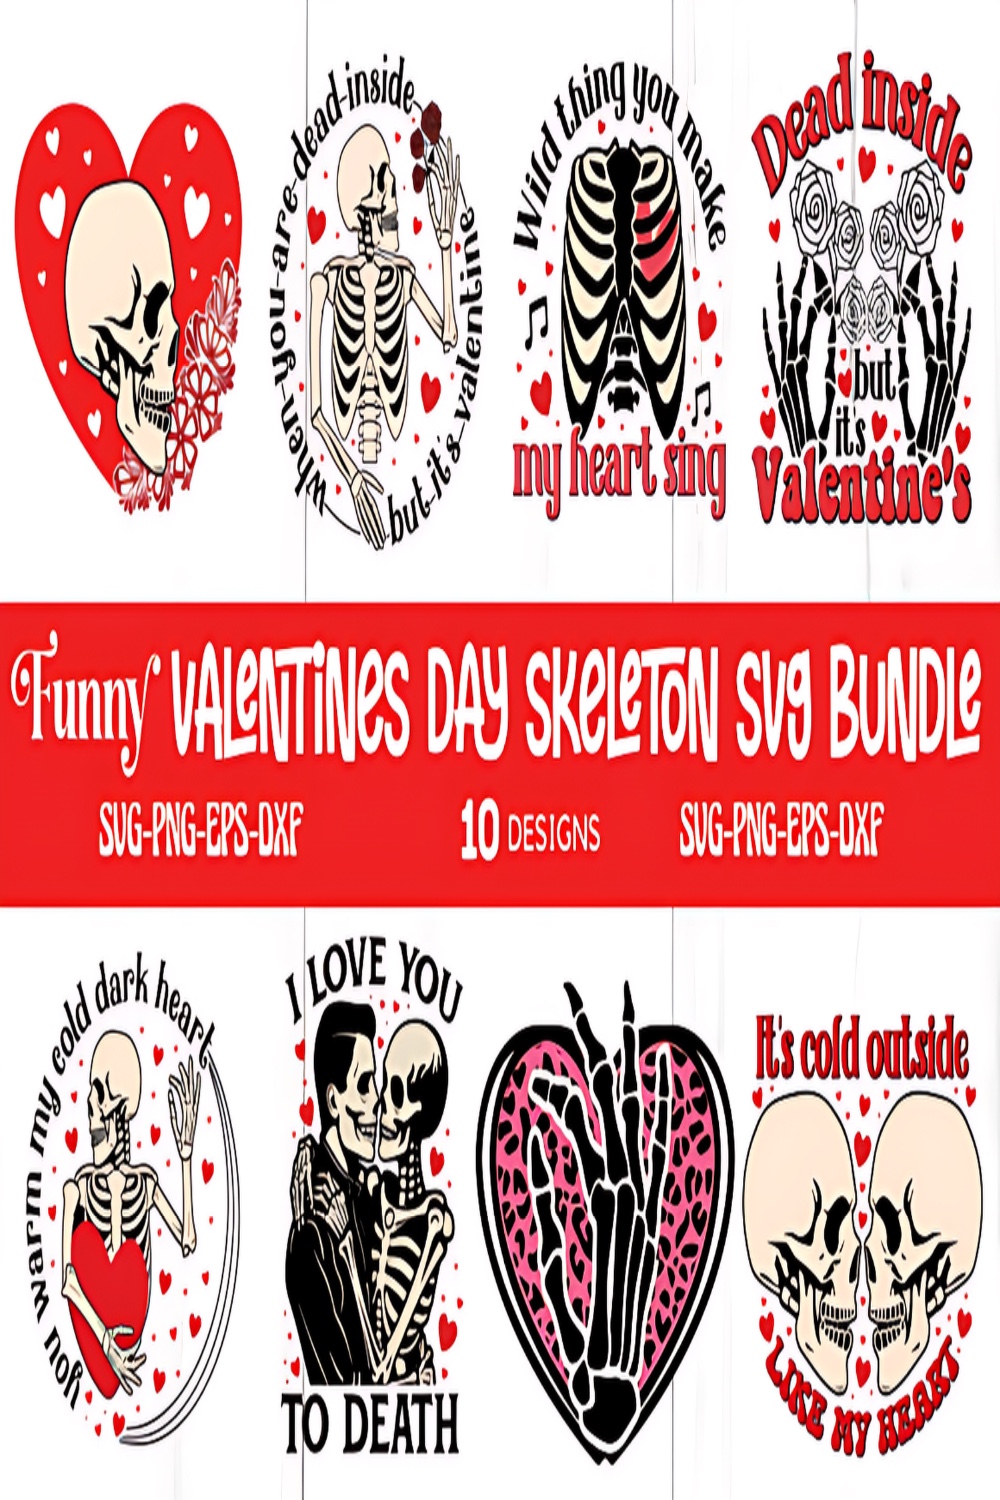 Funny Valentine Day Skeleton Svg Bundle pinterest preview image.